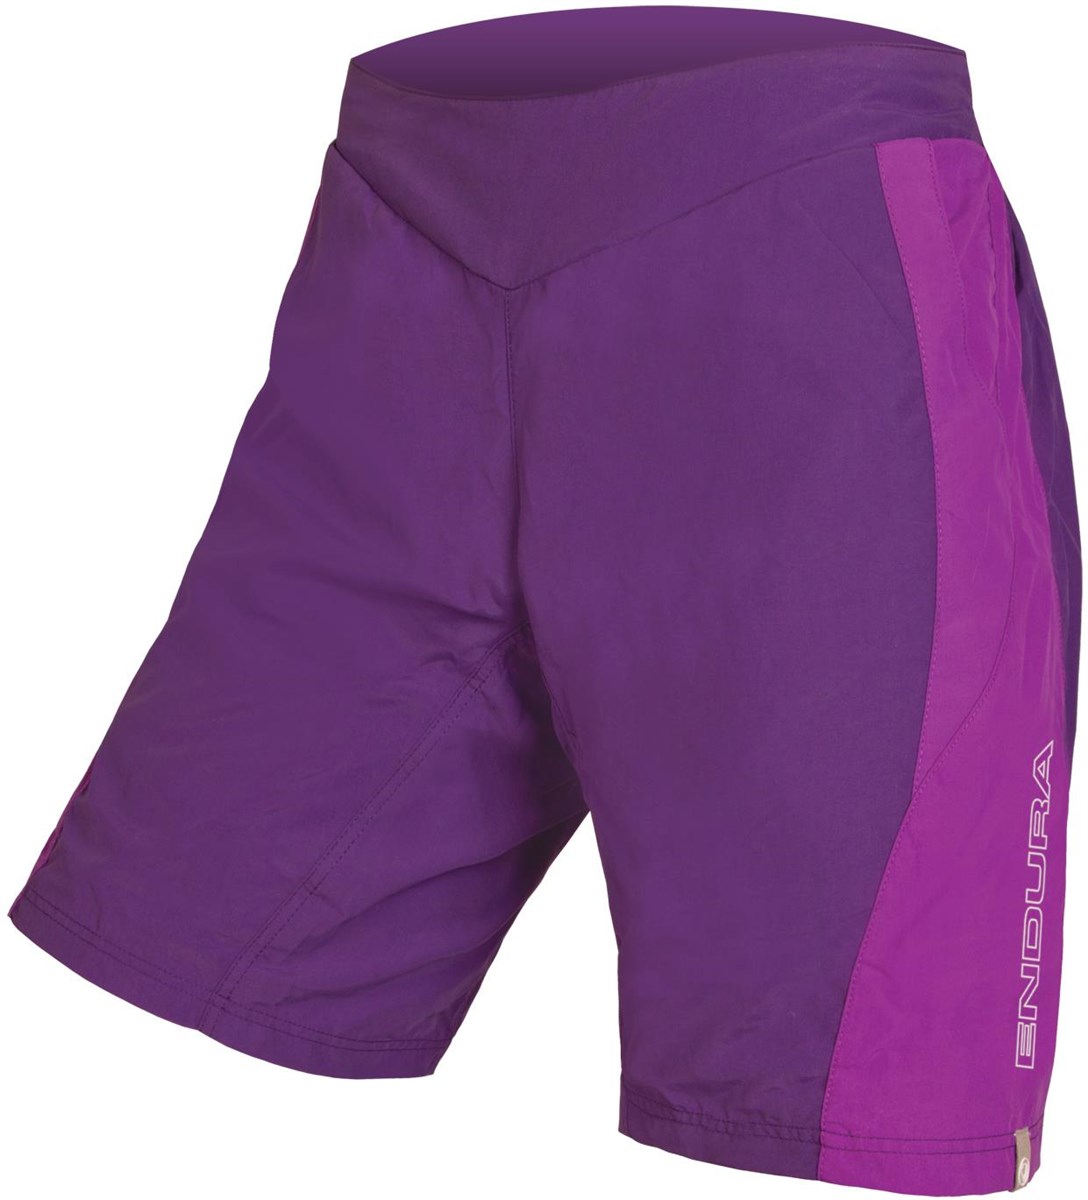 Endura Pulse Womens Cycling Shorts product image